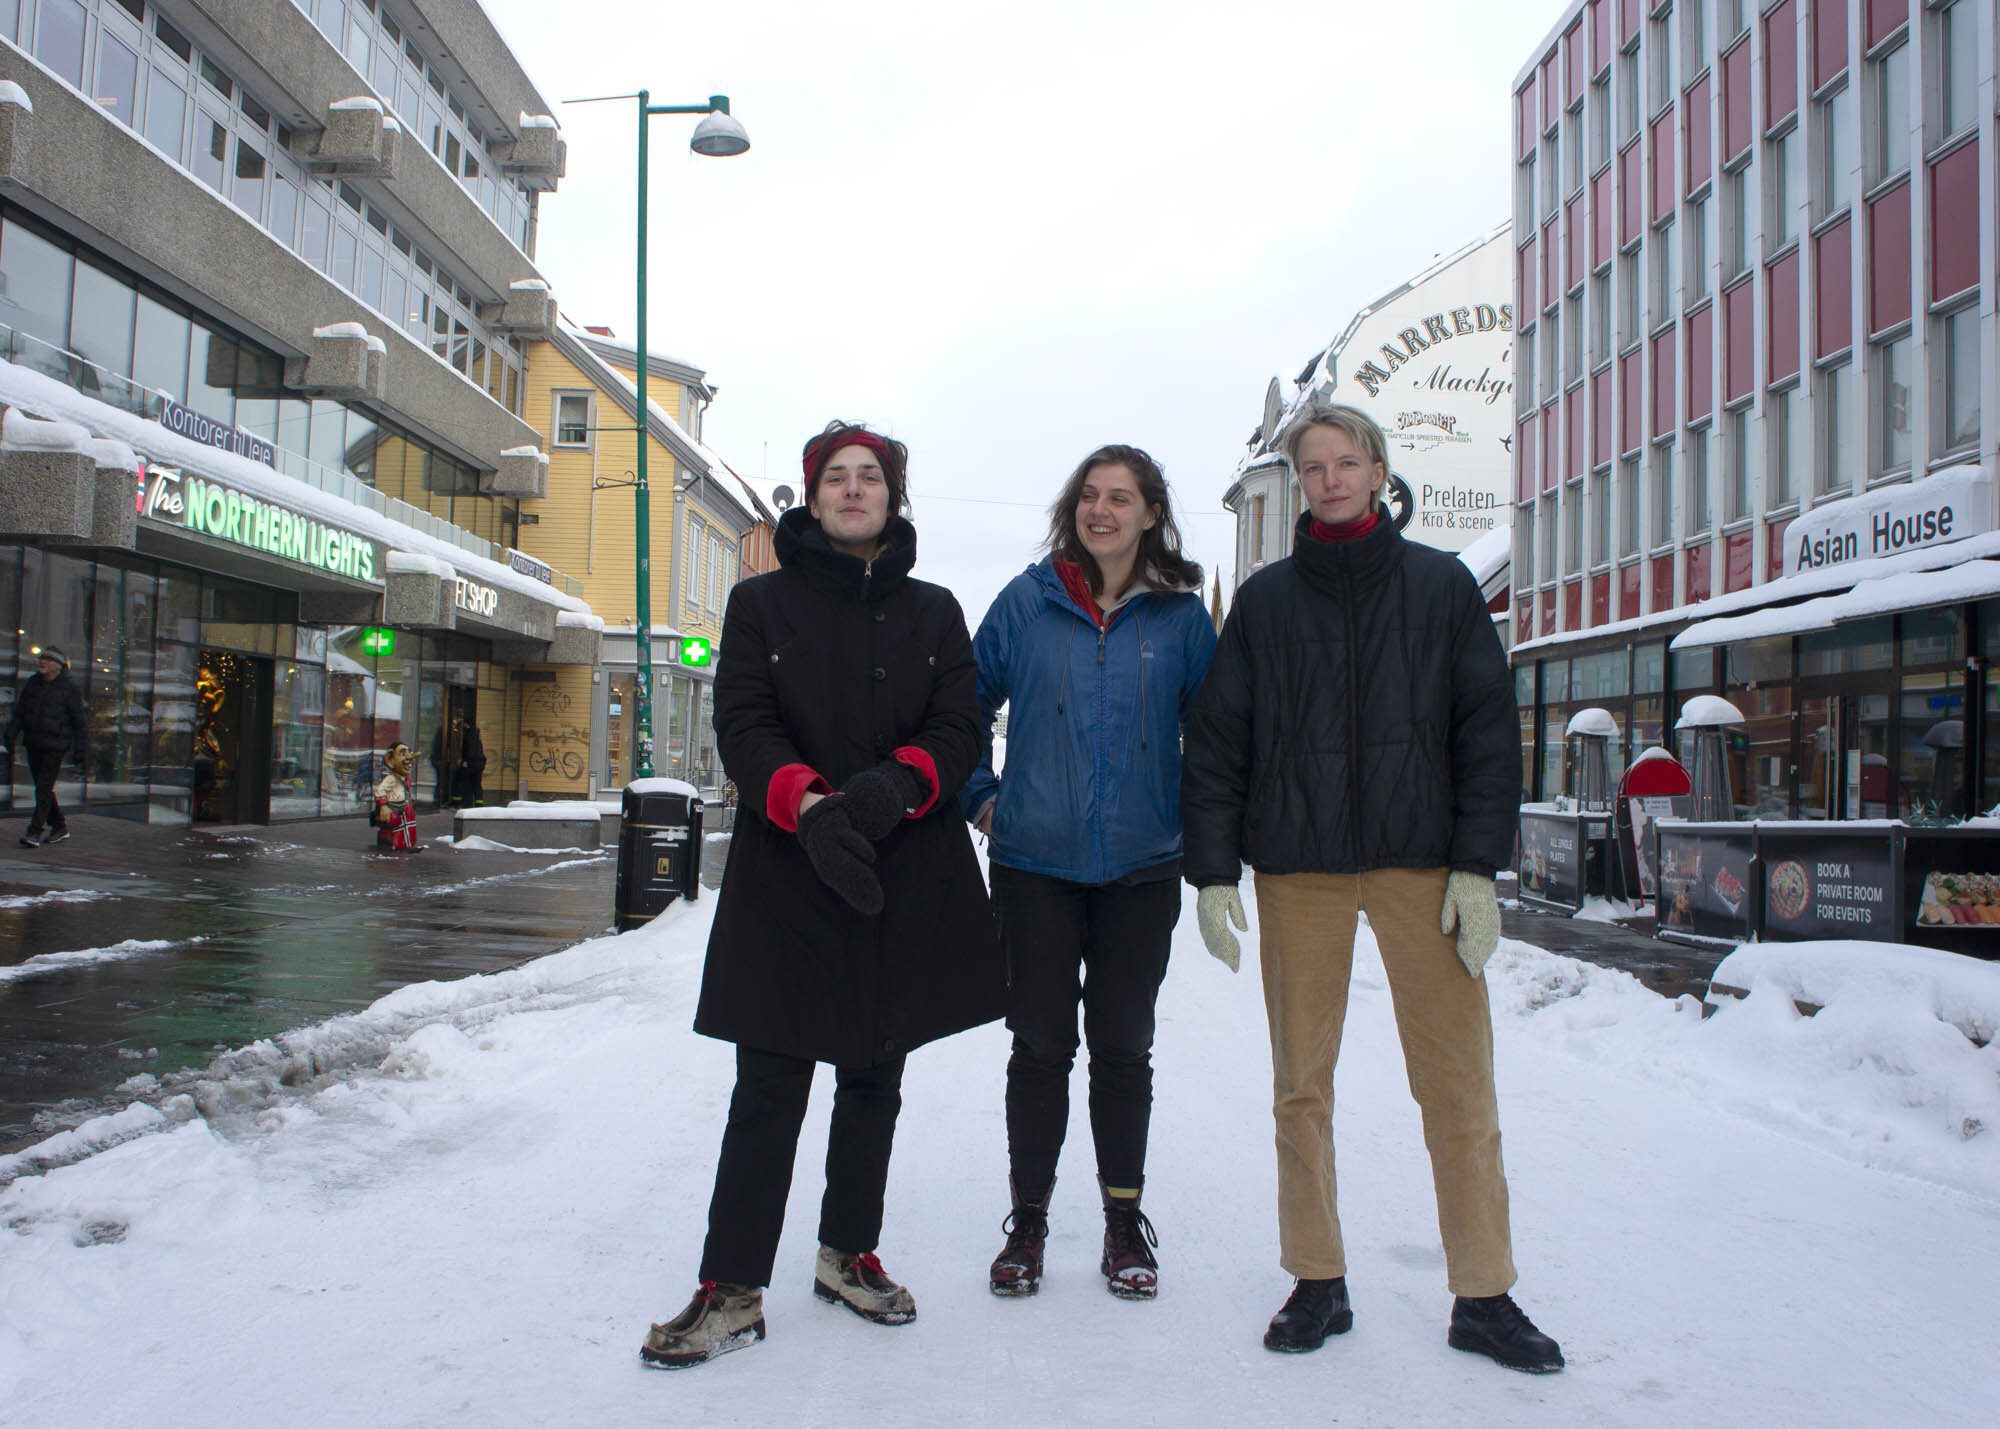  F.v: Andrea Conradsen, Ruth Aitken, Anna Näumann i Kurant 